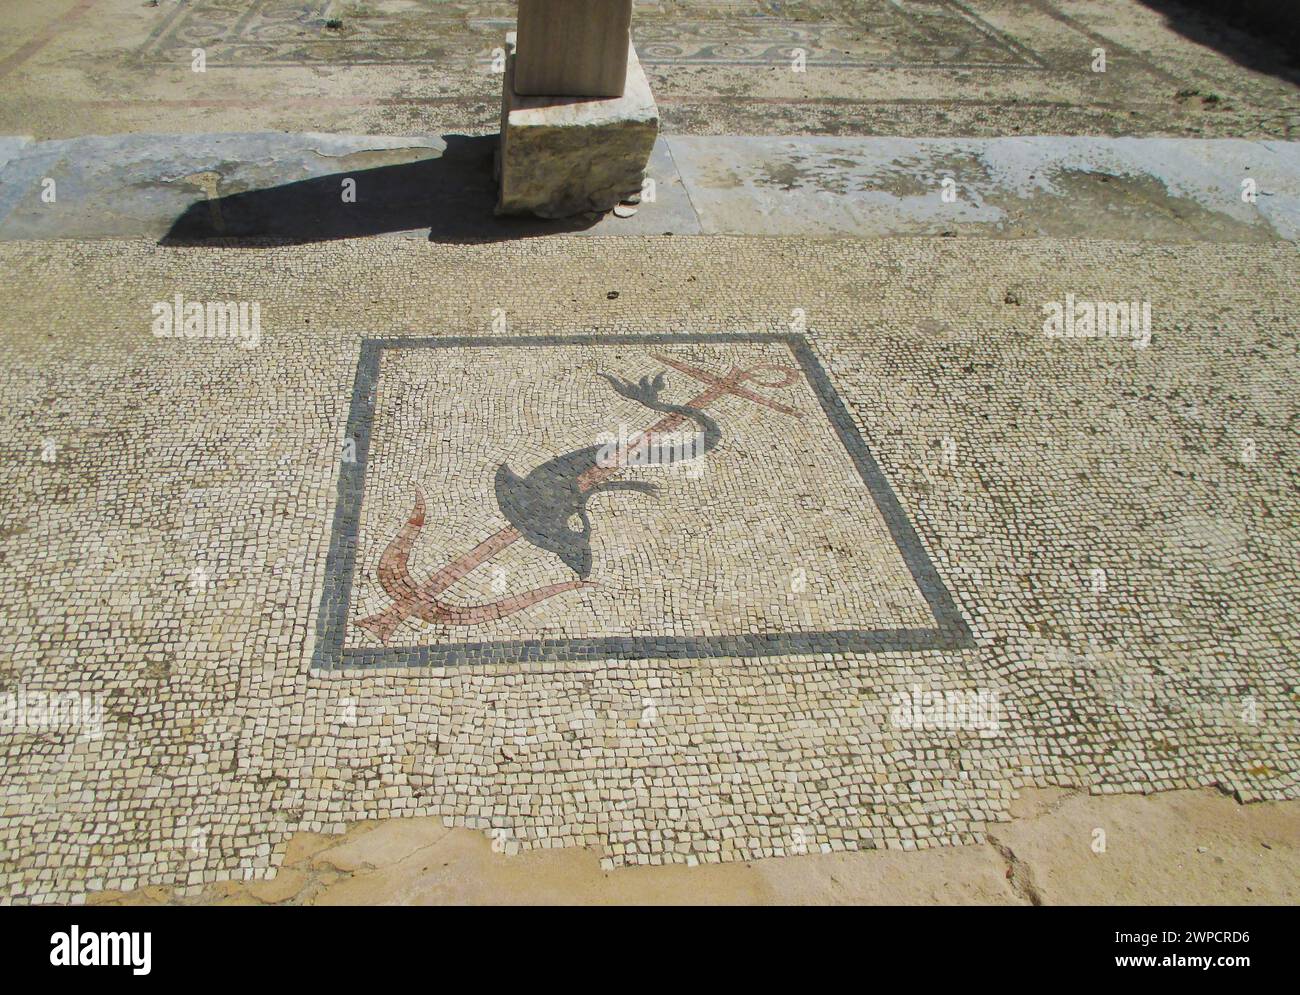 Restes de structure ancienne avec mosaïque de sol d'un dauphin enroulé autour de l'ancre, site archéologique de l'île de Délos, Mykonos, Grèce Banque D'Images